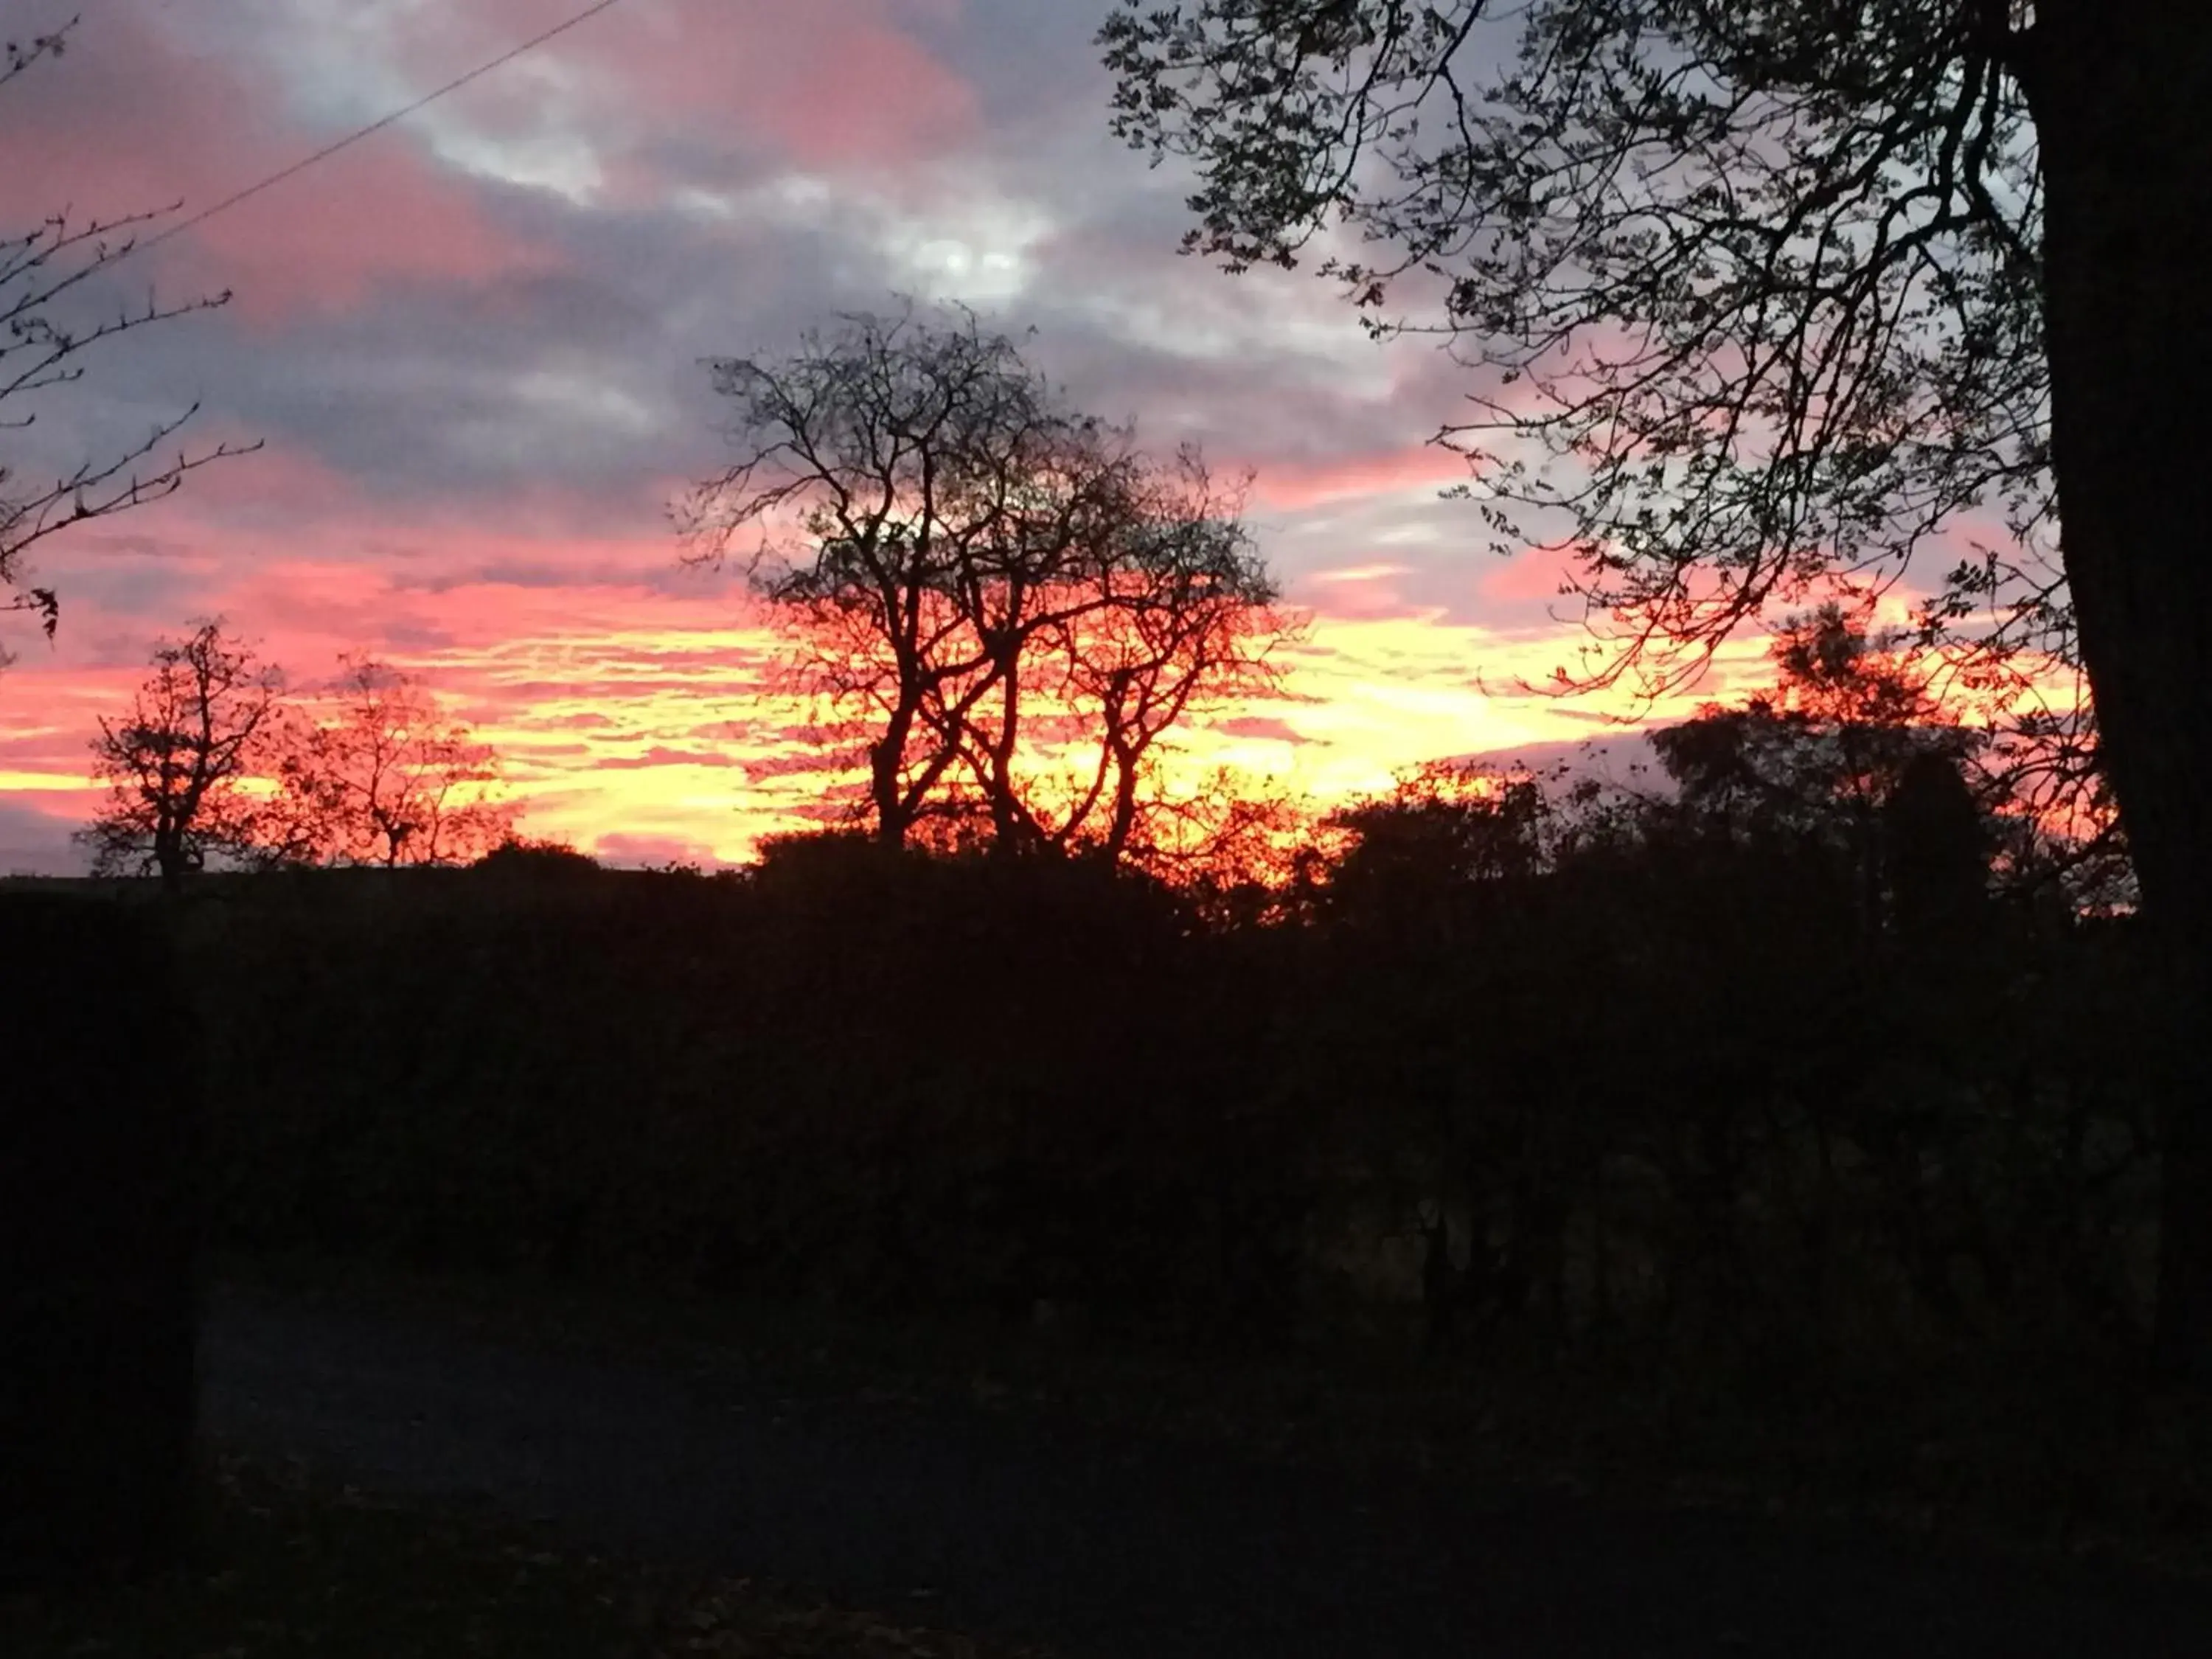 Natural landscape, Sunrise/Sunset in Lodge at Lochside